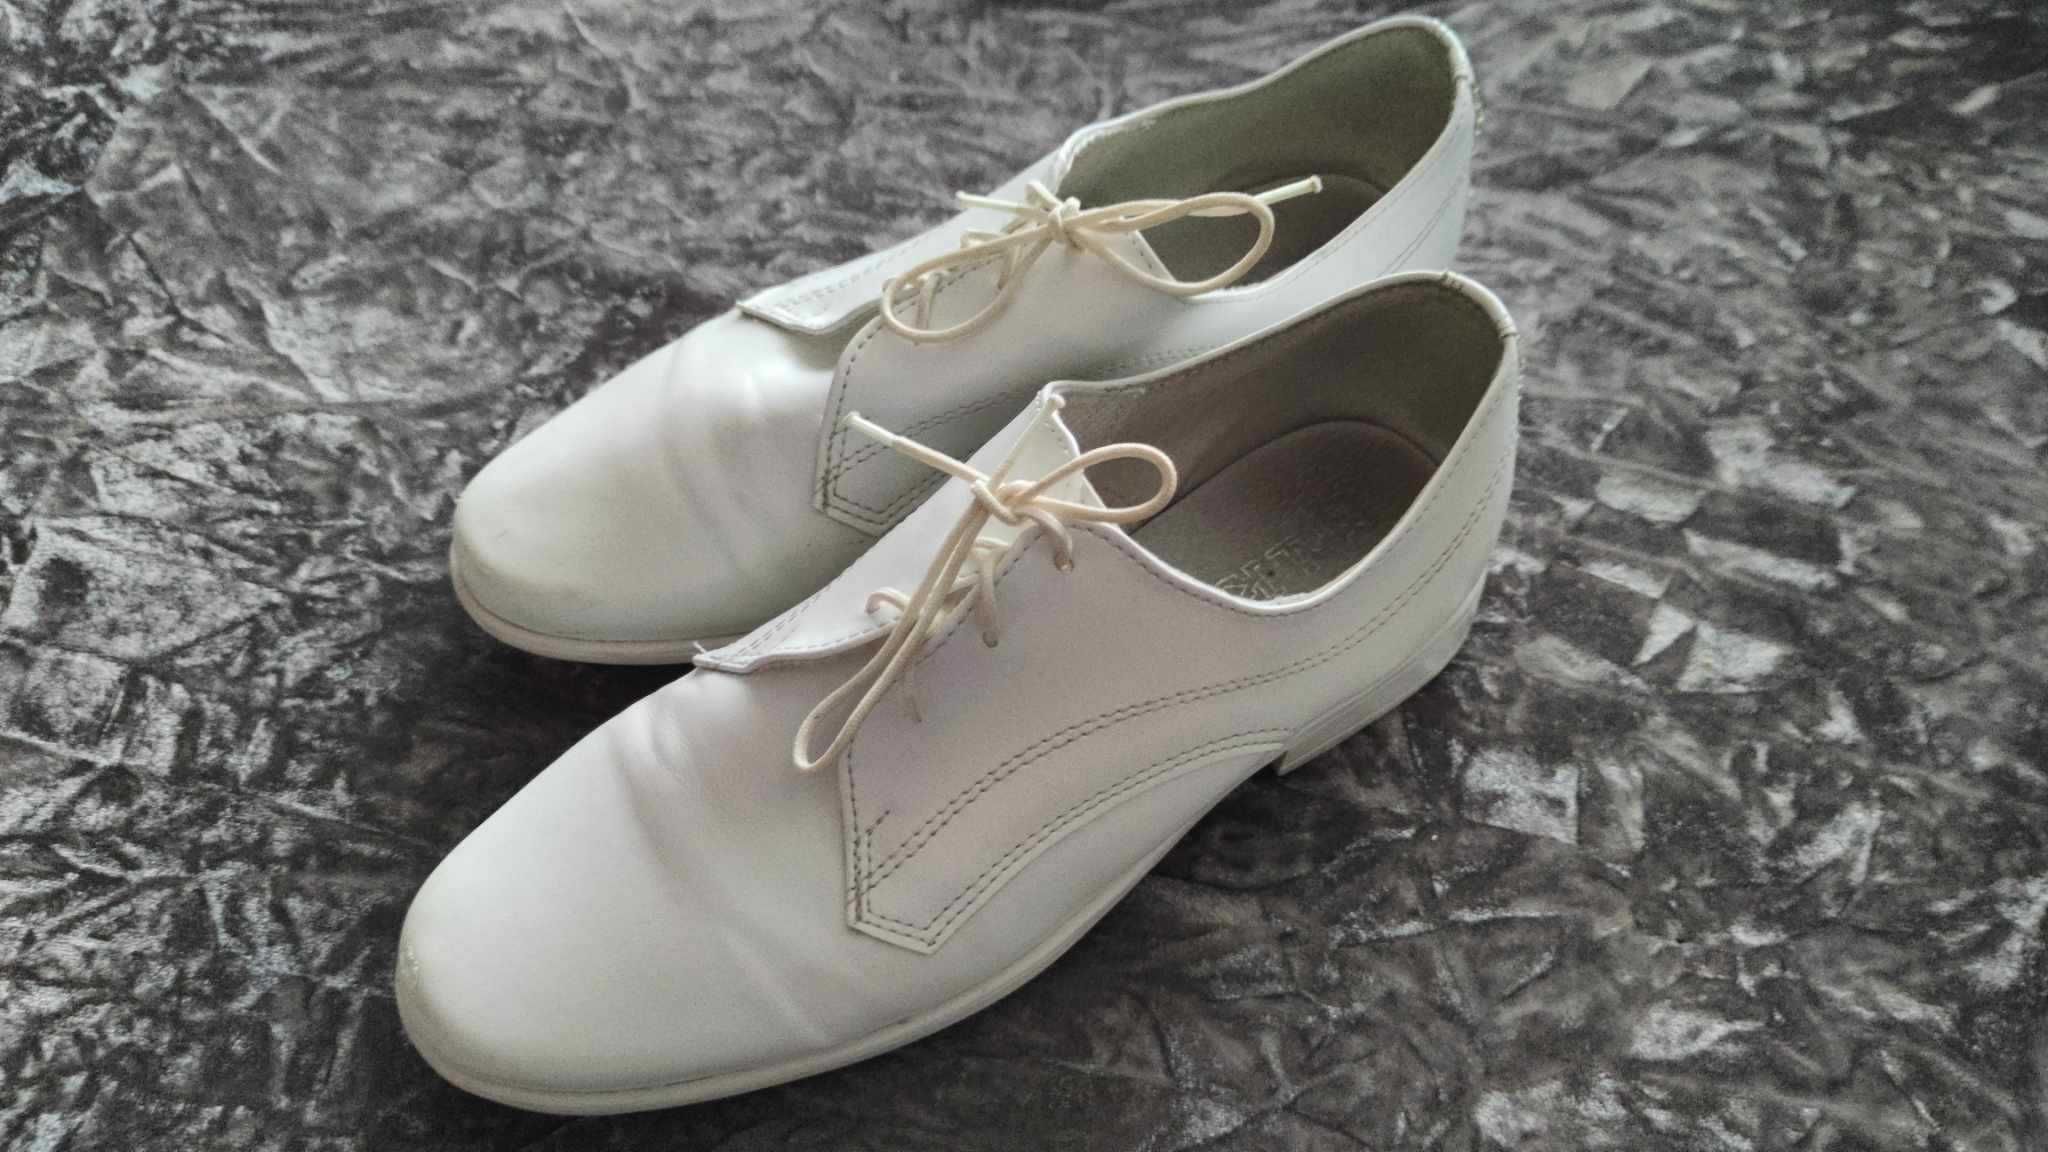 Białe buty chłopięce komunijne. (22 cm - dł. wkładki)